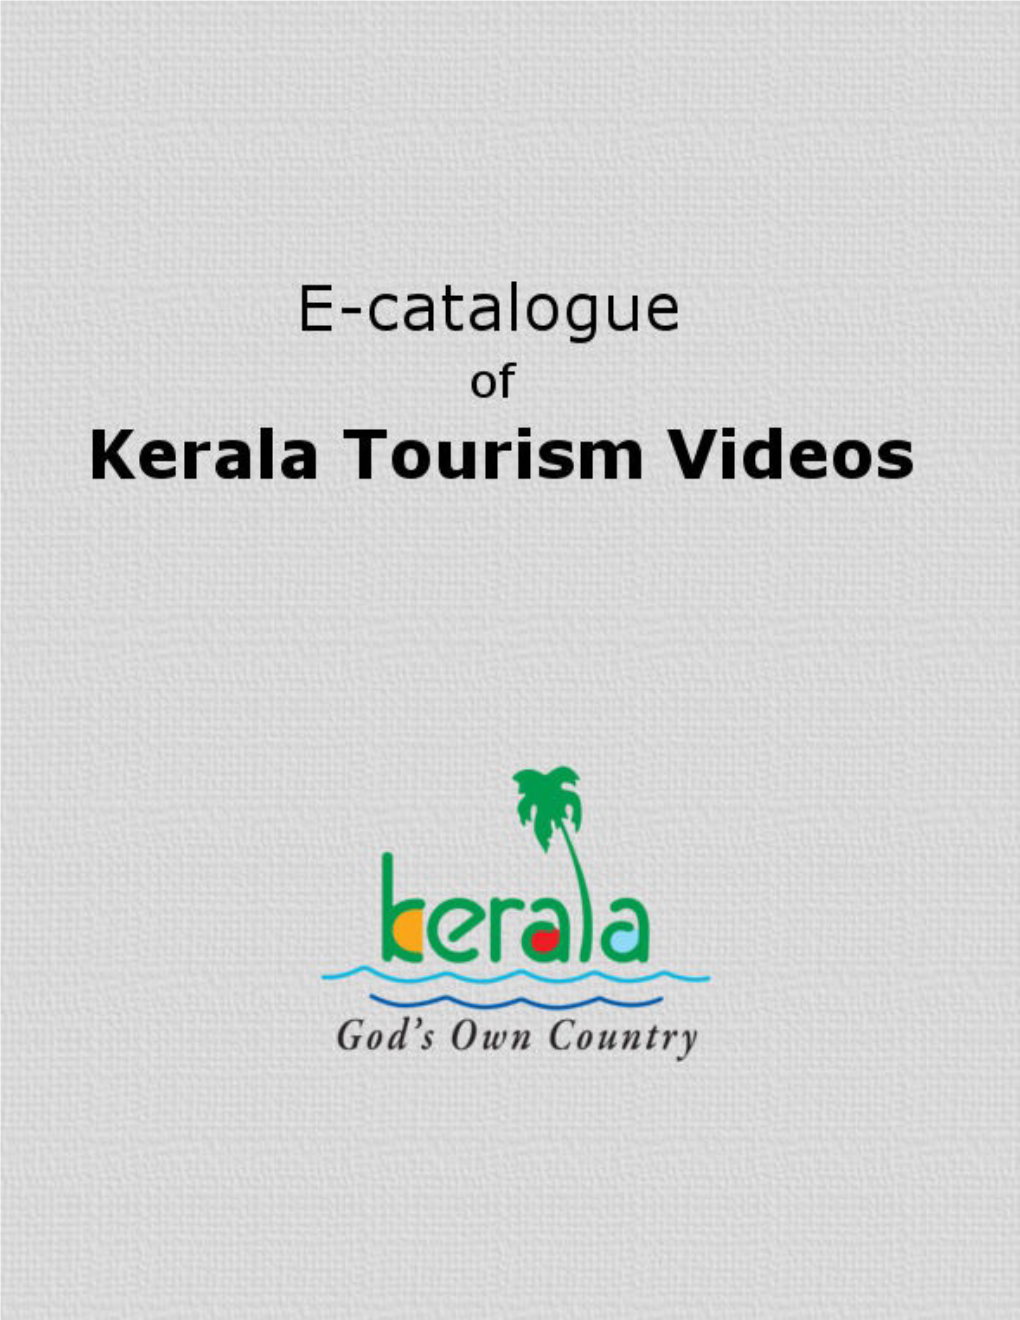 E-Catalogue of Kerala Tourism Videos